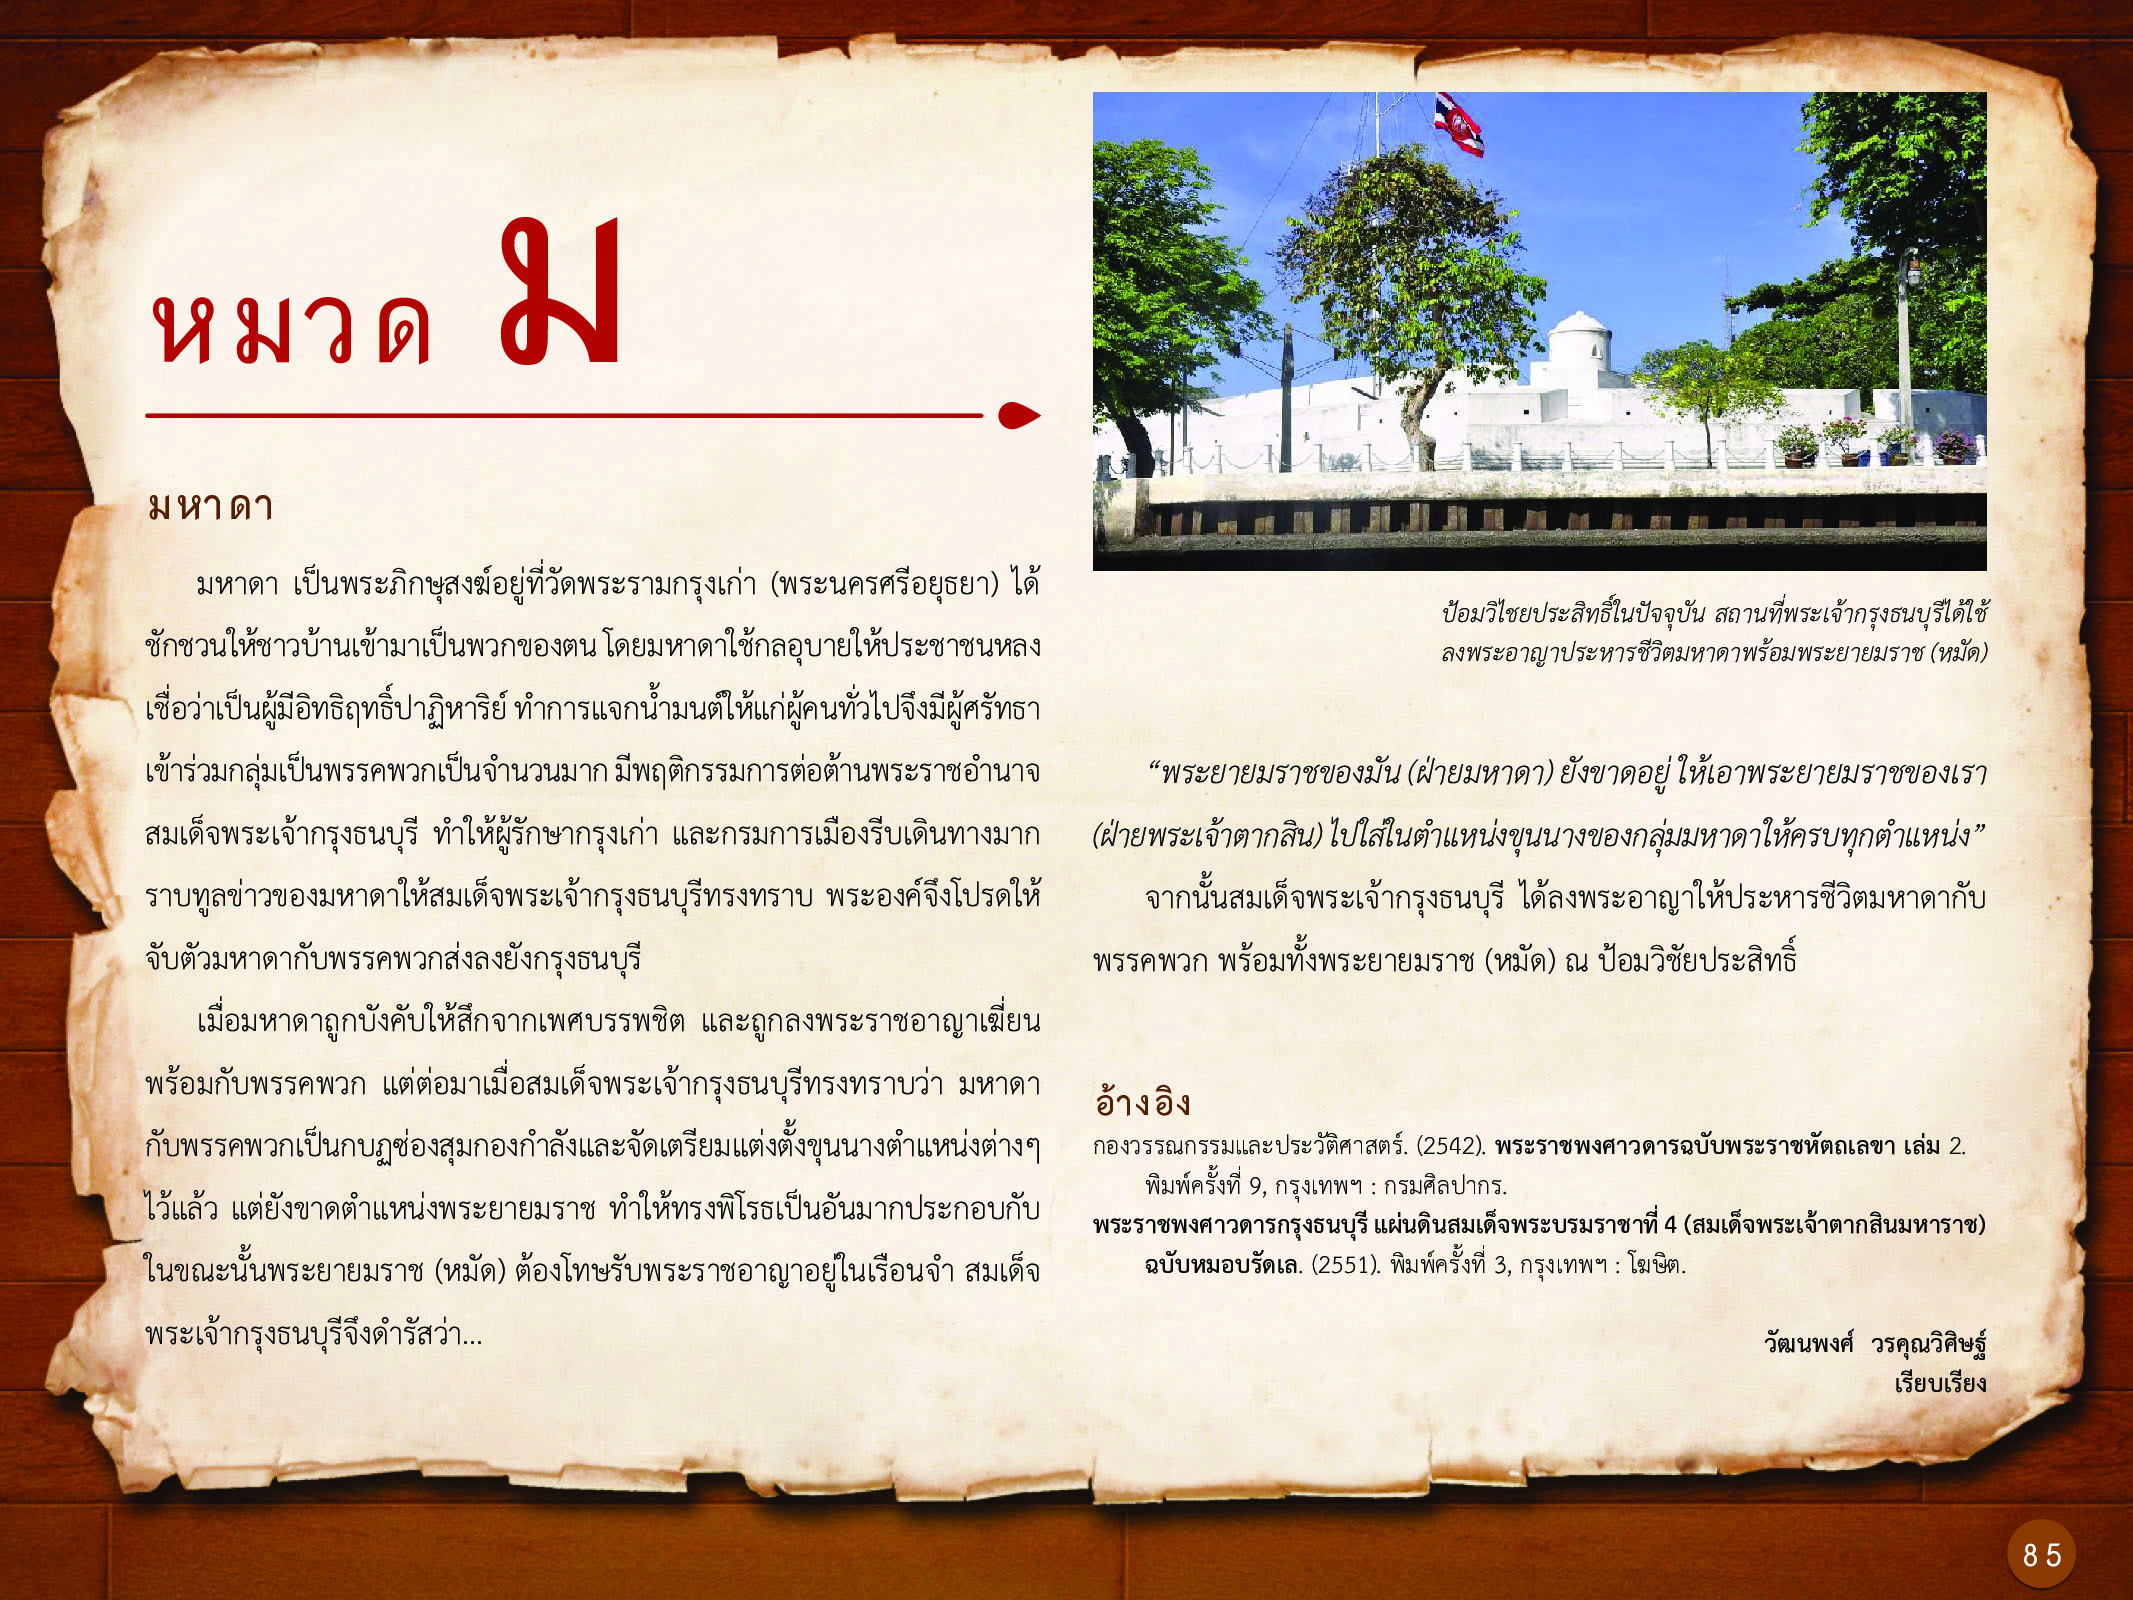 ประวัติศาสตร์กรุงธนบุรี ./images/history_dhonburi/85.jpg